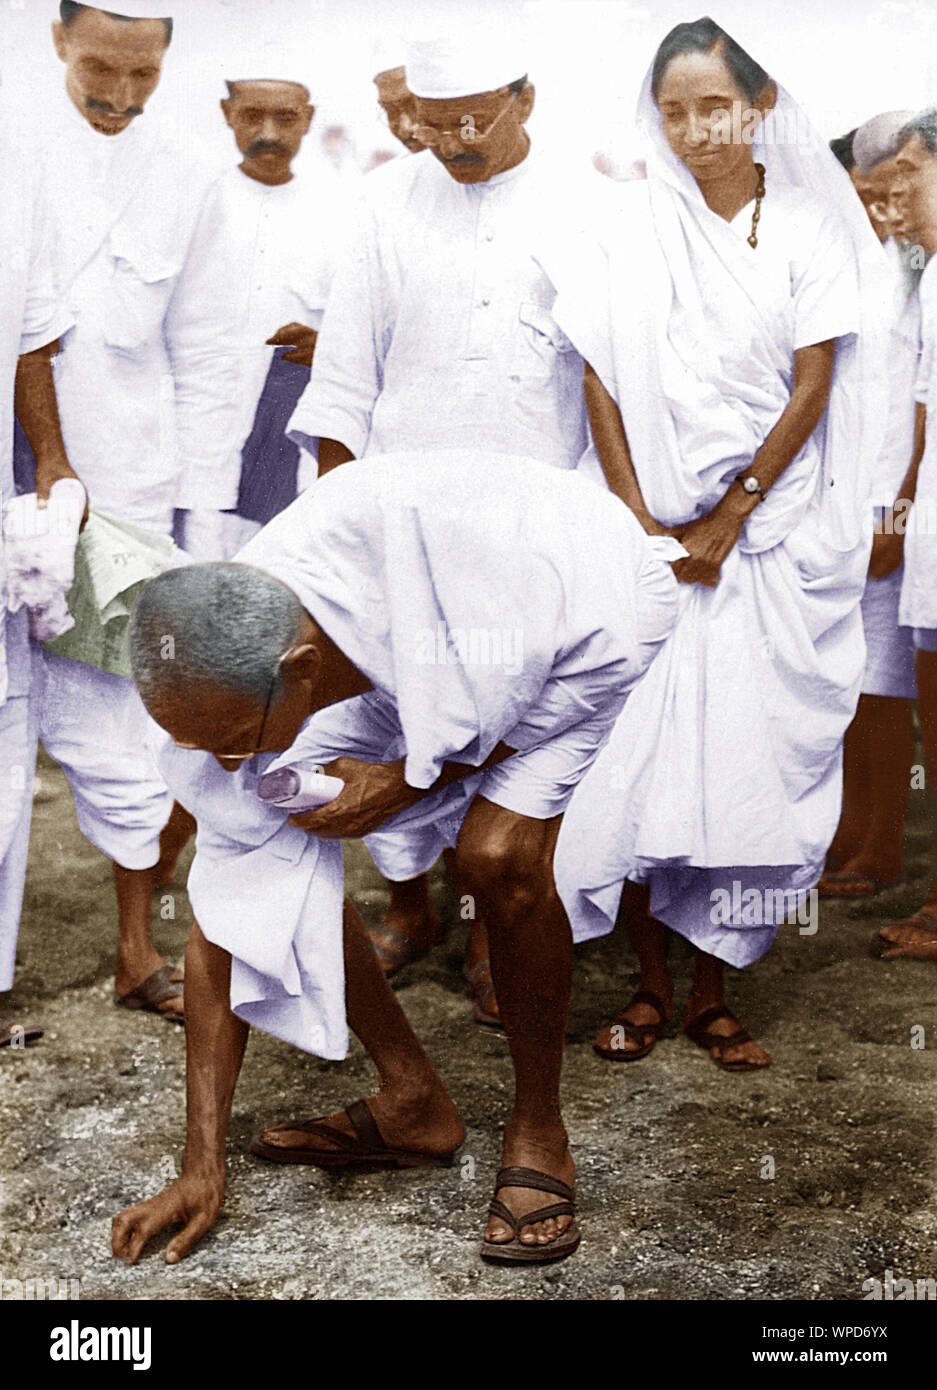 Mahatma Gandhi bricht das Salzgesetz, indem er einen Klumpen natürlichen Salzes aufnimmt, Dandi, Indien, 6. April 1930, Altes Vintage 1900s Bild Stockfoto